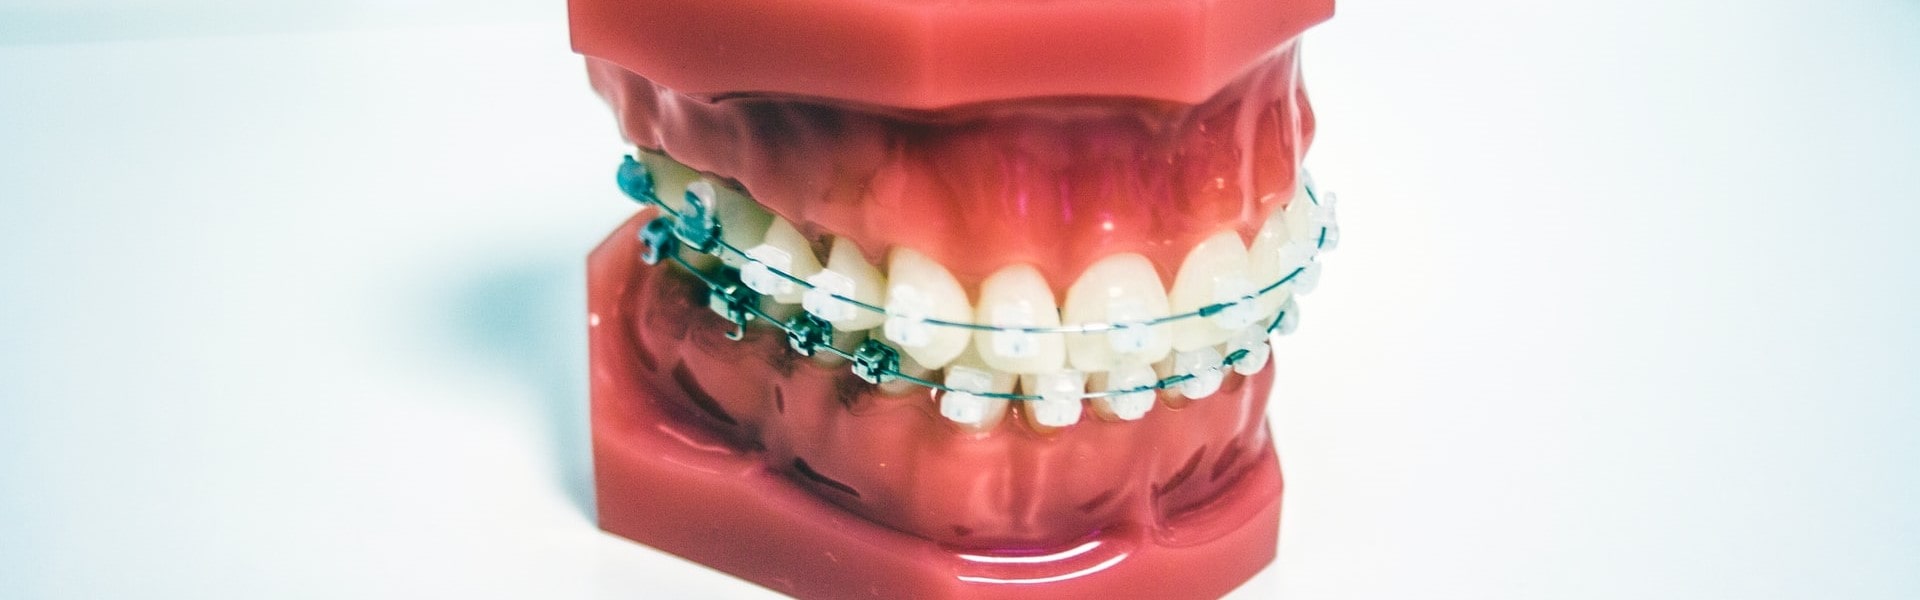 Одномоментная имплантация зубов: красивая улыбка за один день